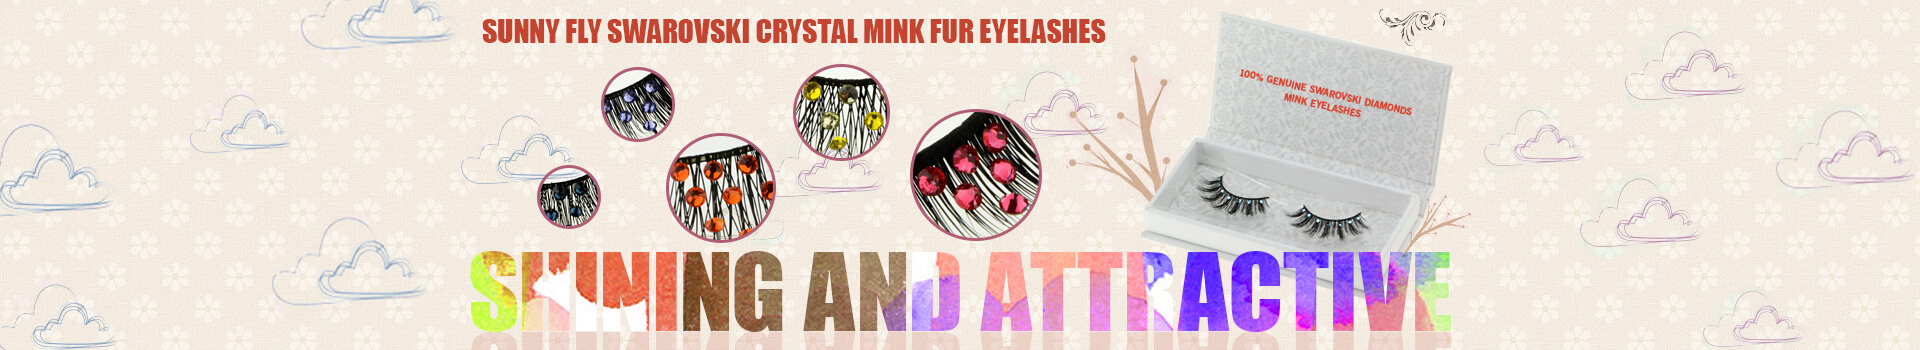 Swarovski Crystal Mink Fur Eyelashes MS13